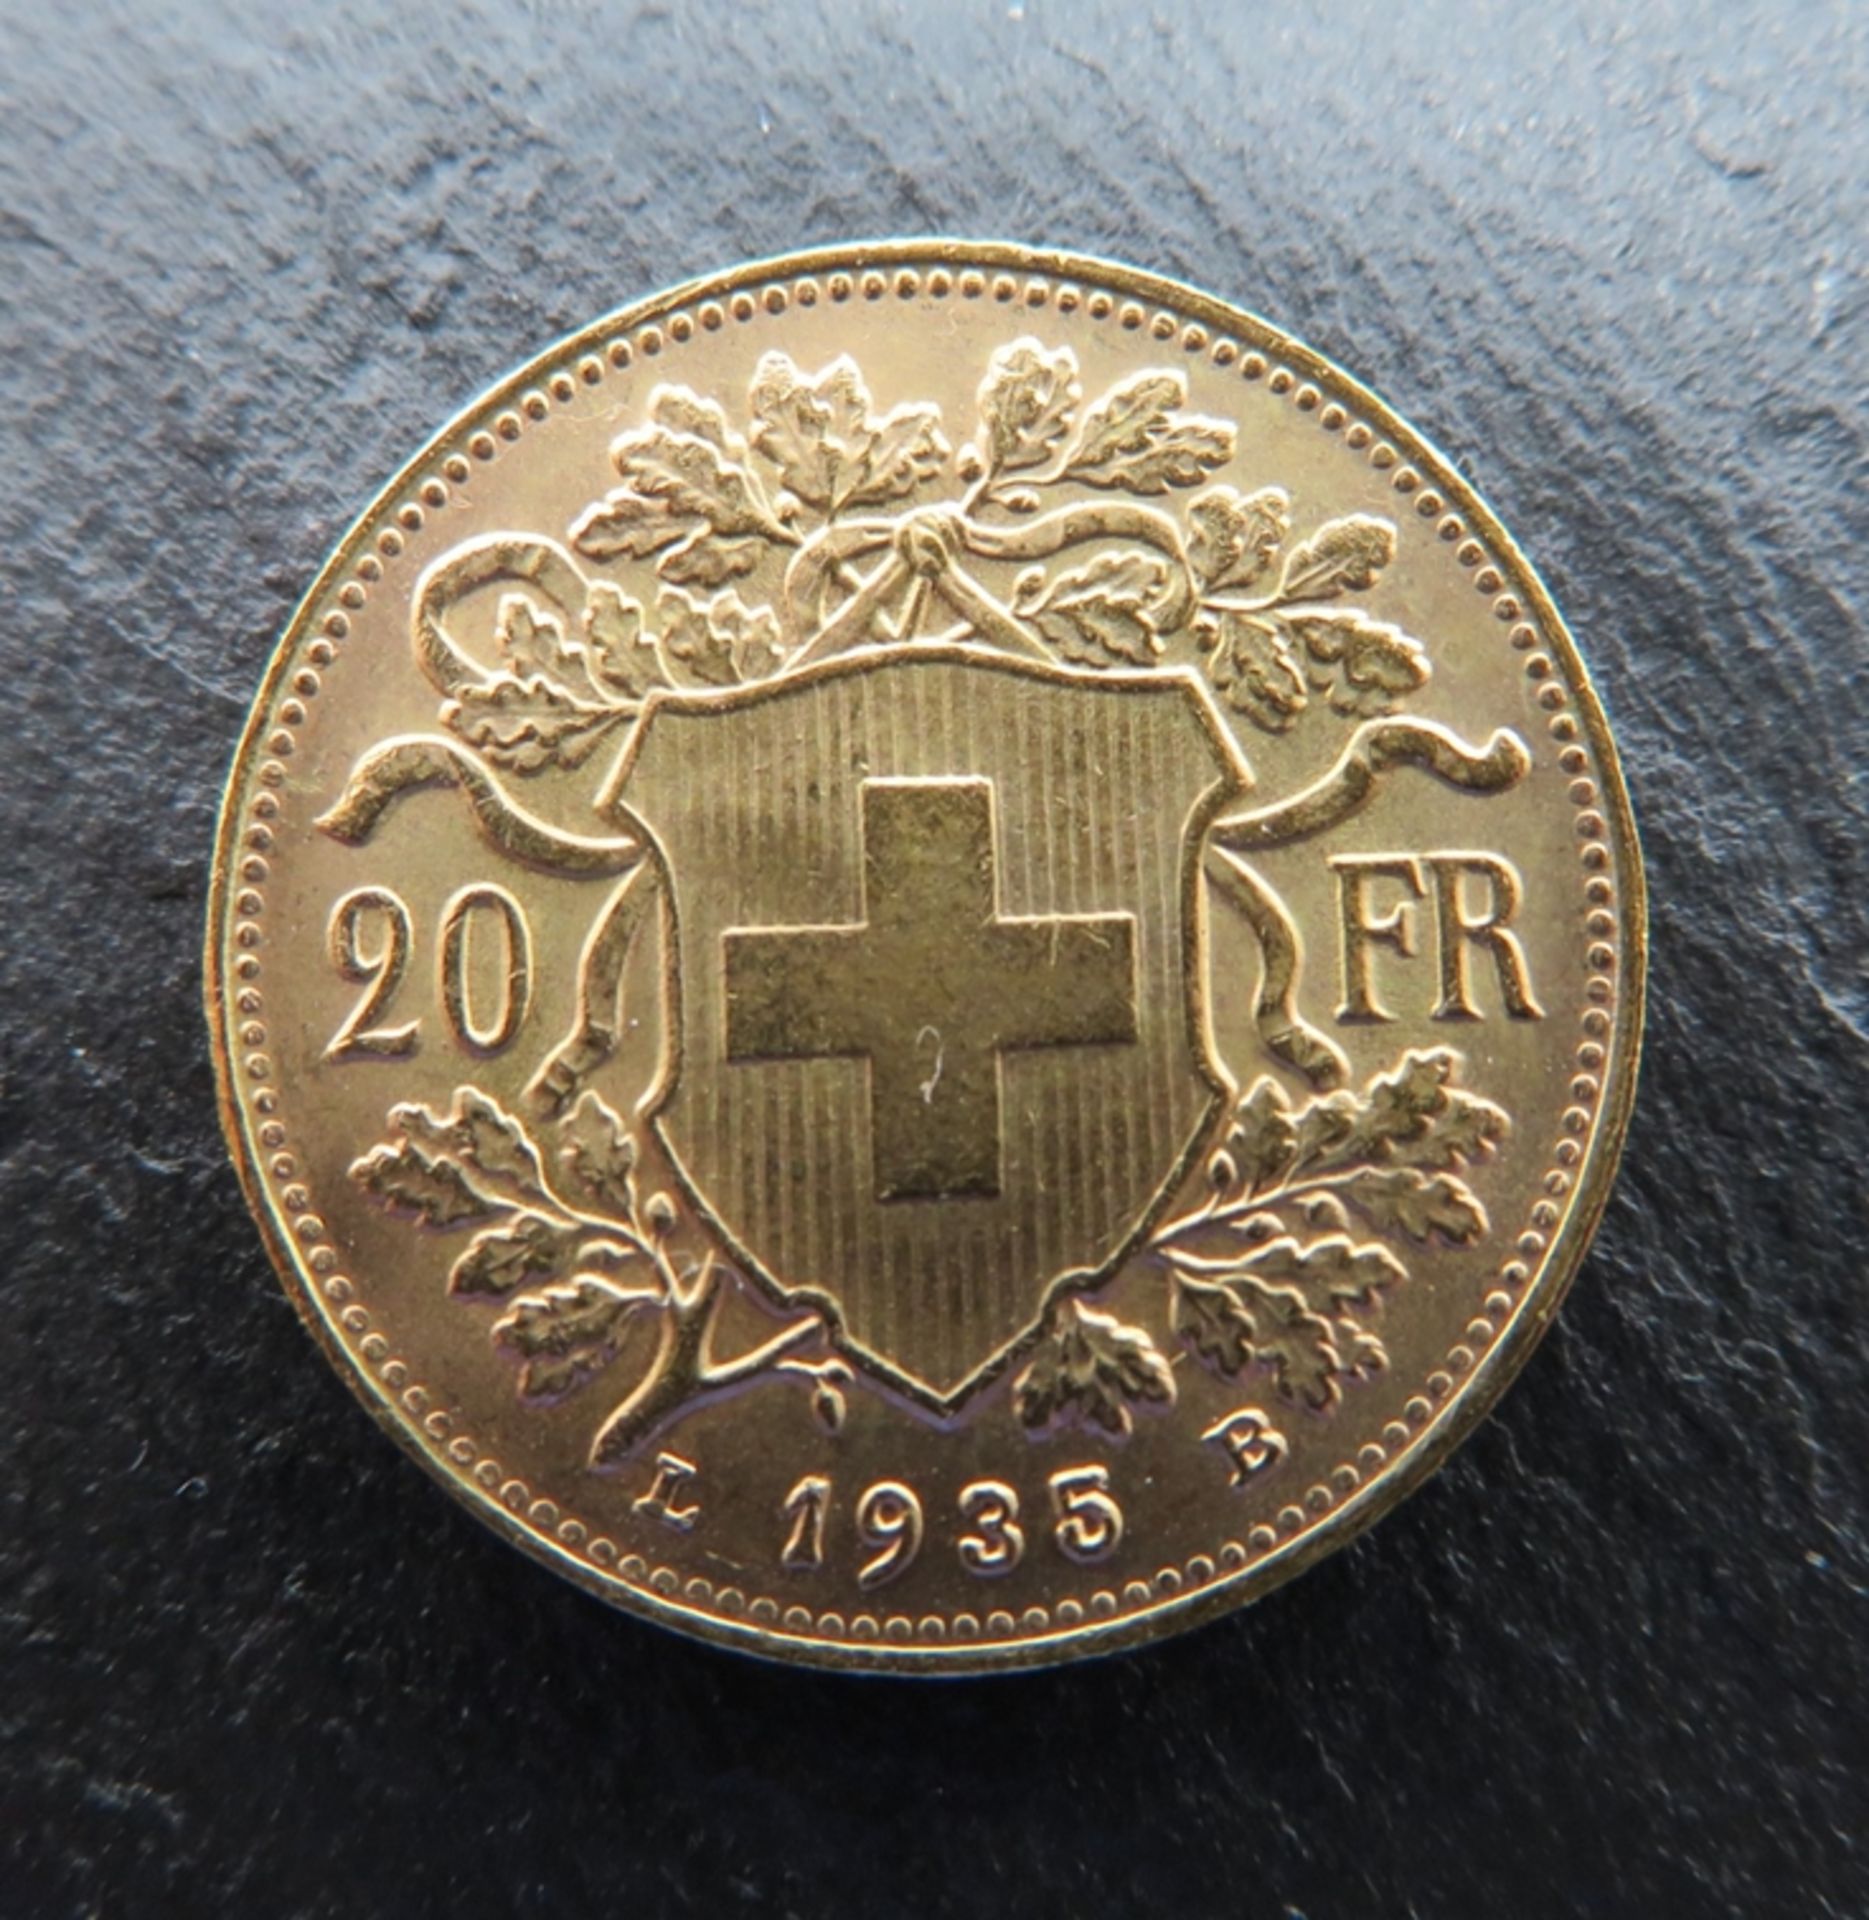 Goldmünzen, Schweiz, Vreneli, 20 Franken, 1935B, Gold 900/000, 6,45 g, d 2,1 cm.